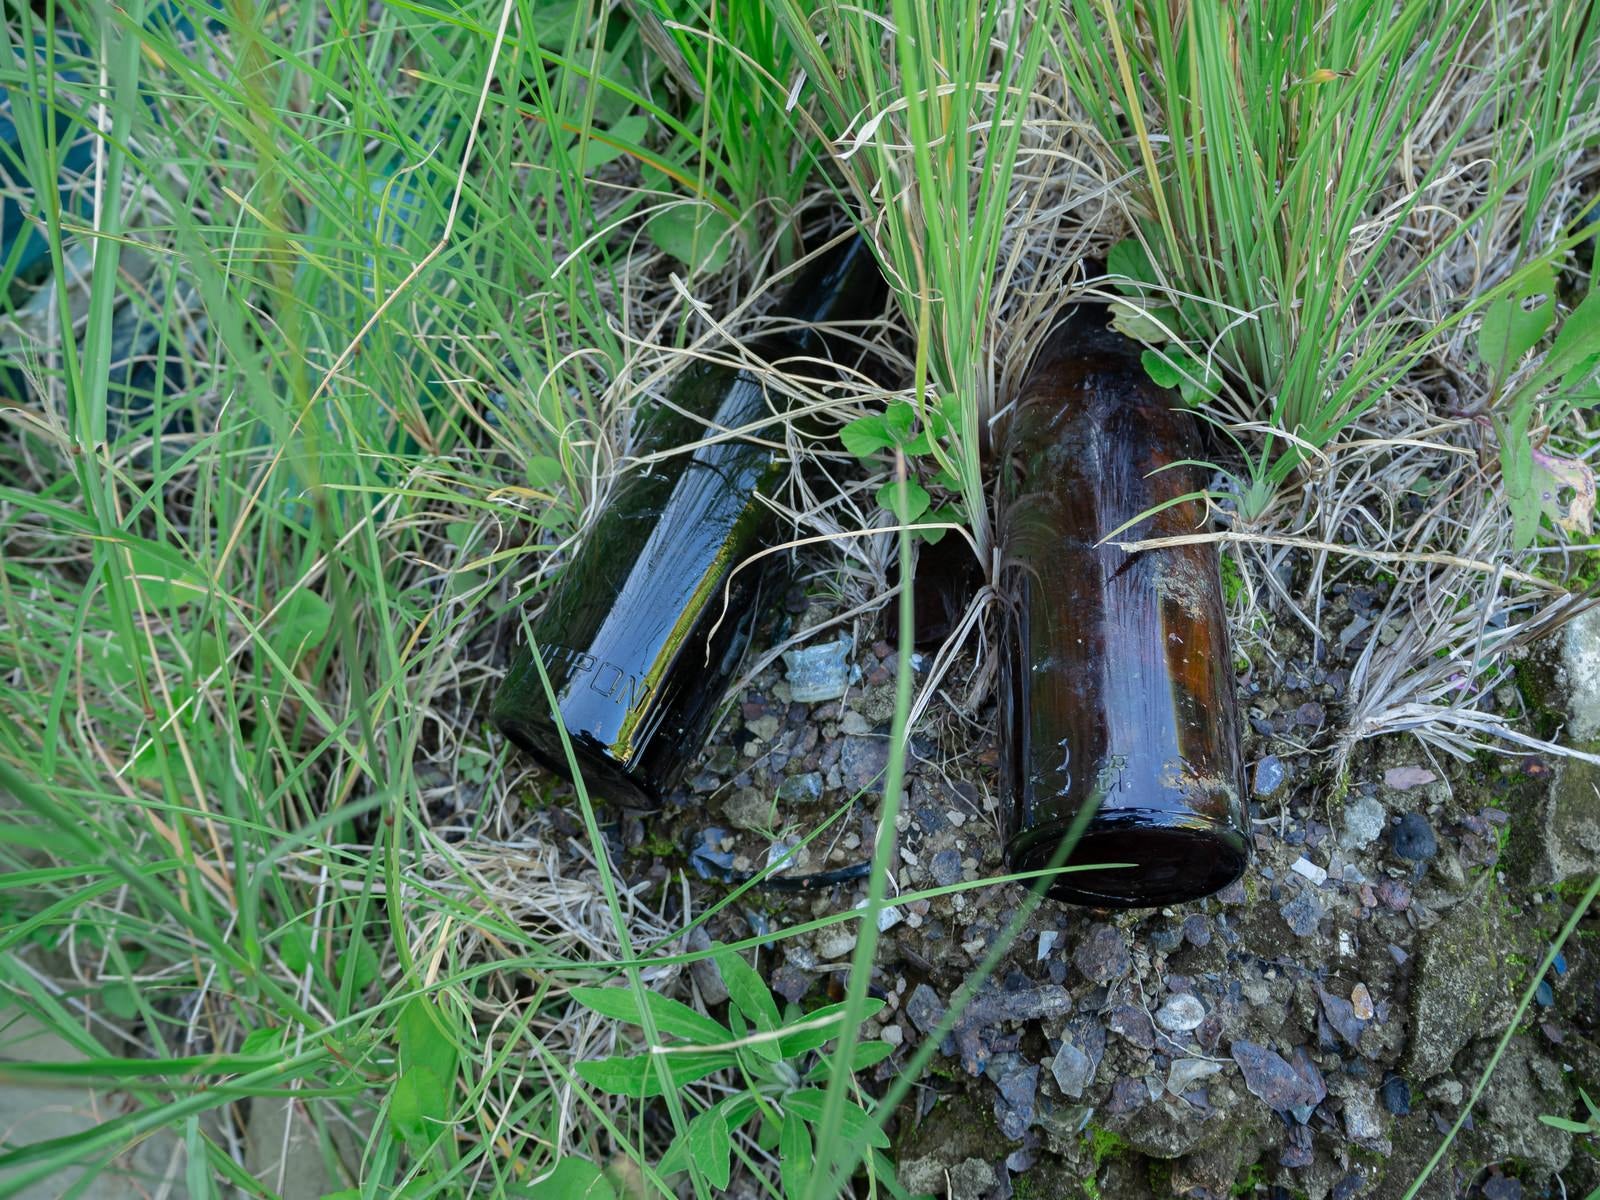 「給水部壕口に残る「NIPPON」と文字が残る空き瓶」の写真